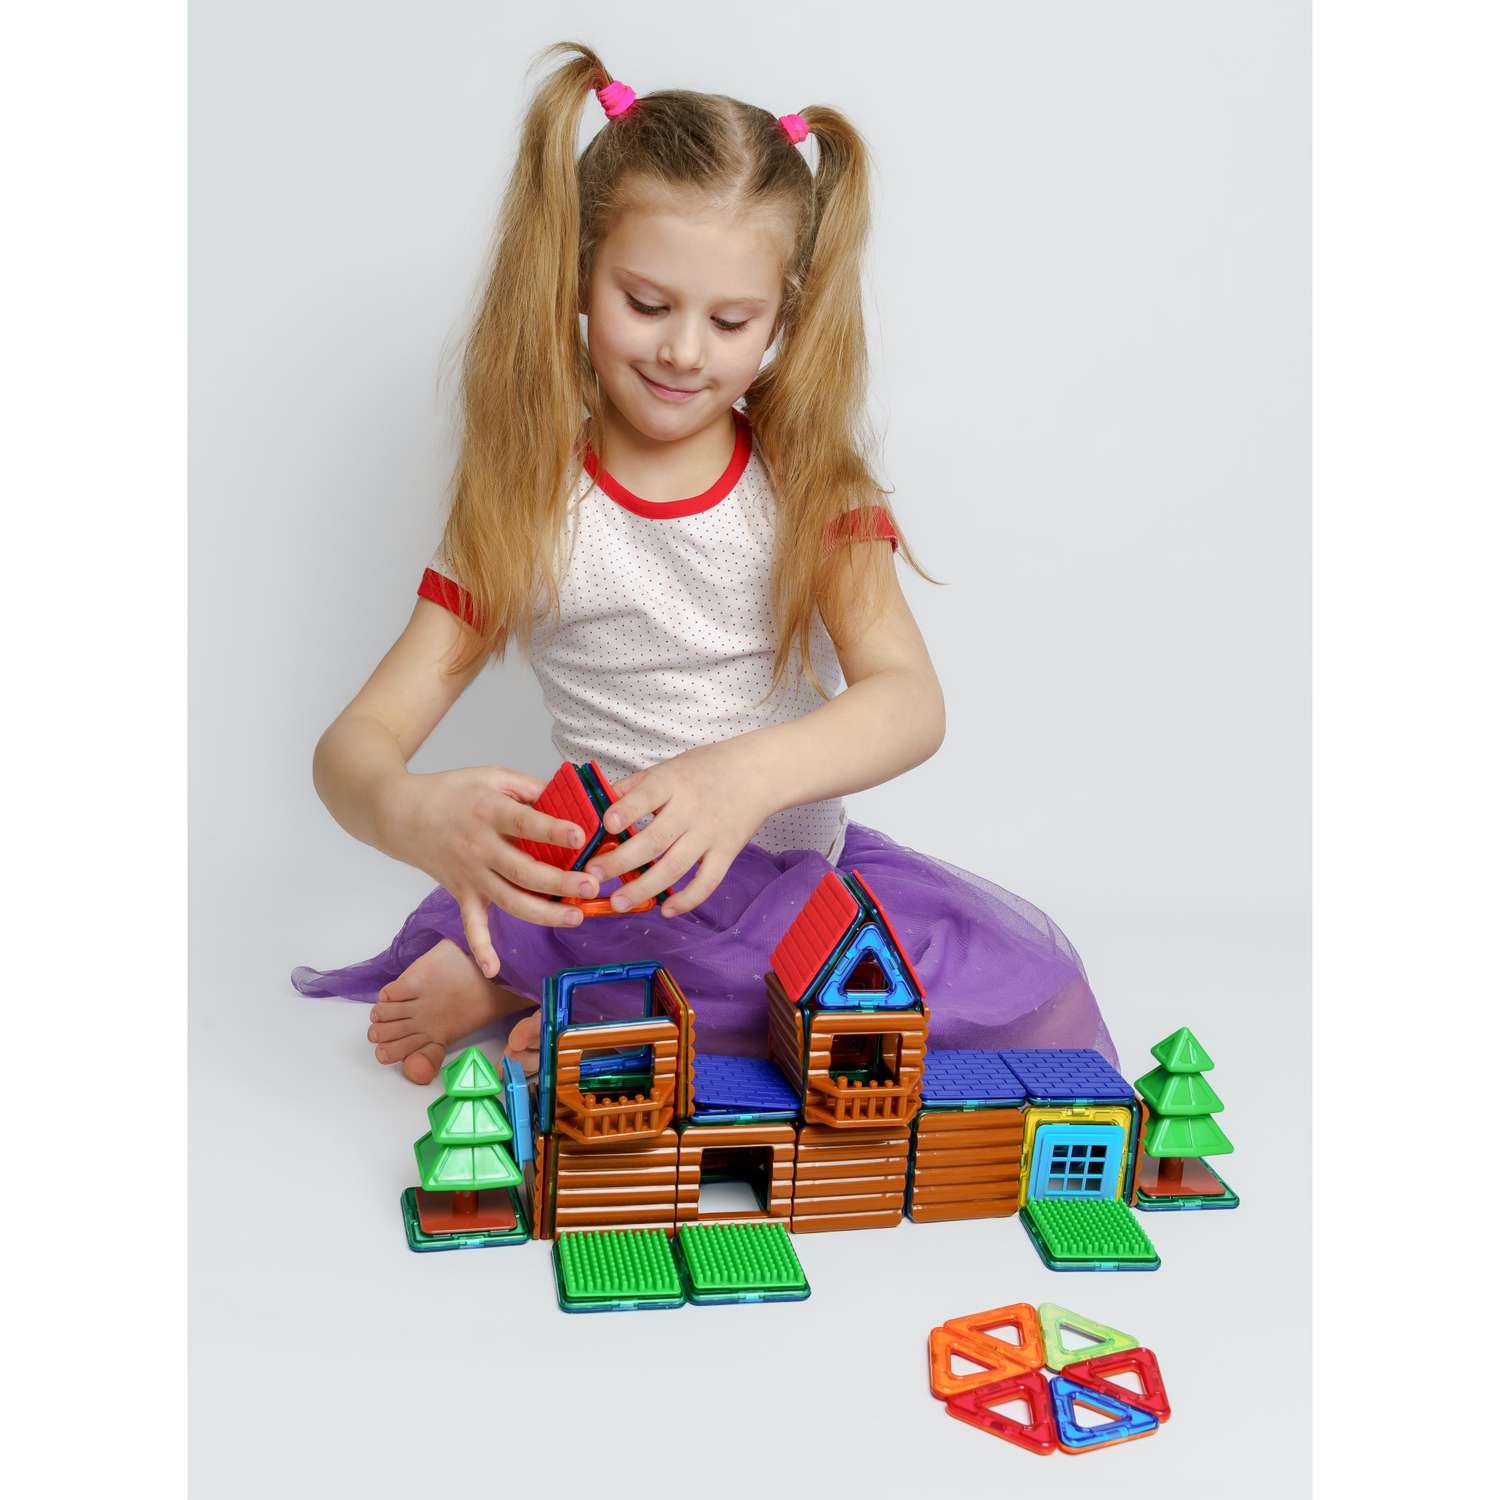 Конструктор Крибли Бу магнитный пластиковый сборный/детская развивающая игрушка с крупными деталями 48 элементов - фото 3